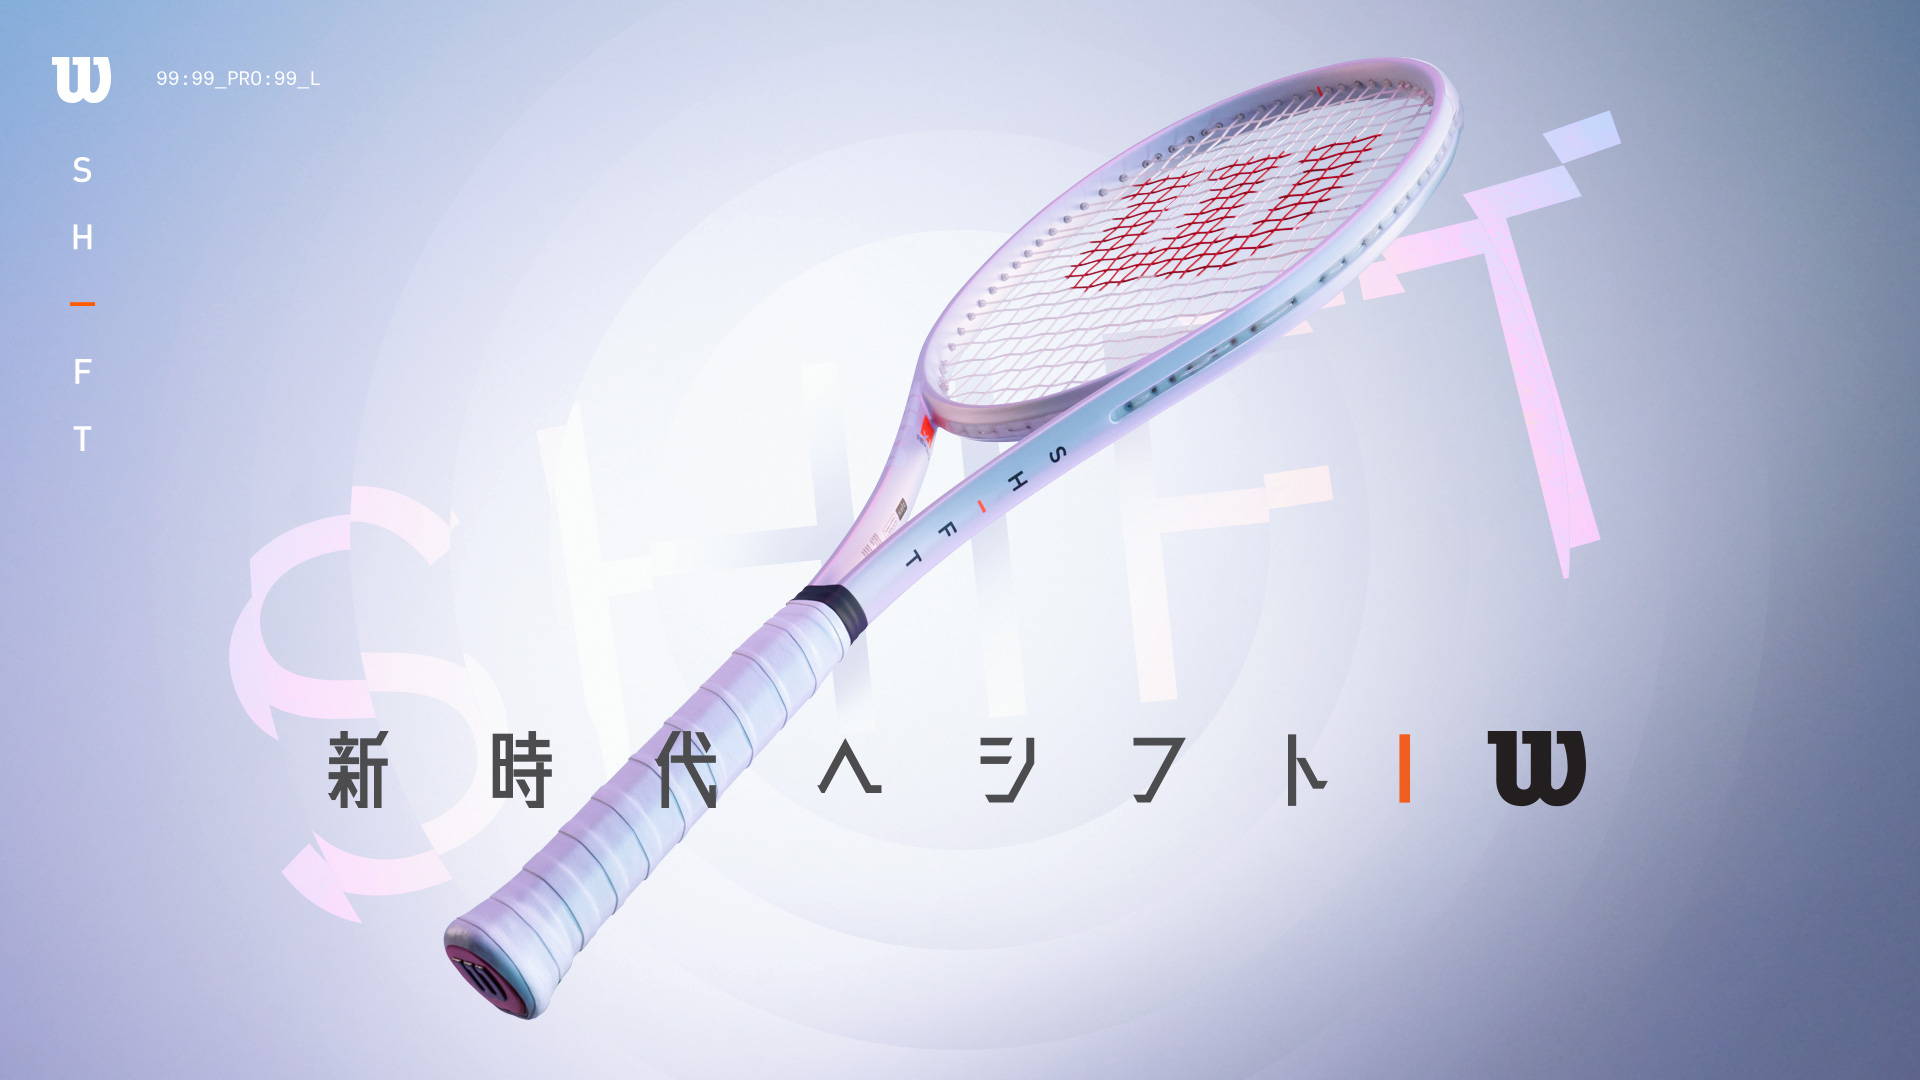 テニスラケット | SHIFT V1.0 「新時代へシフト」 – ウイルソン公式